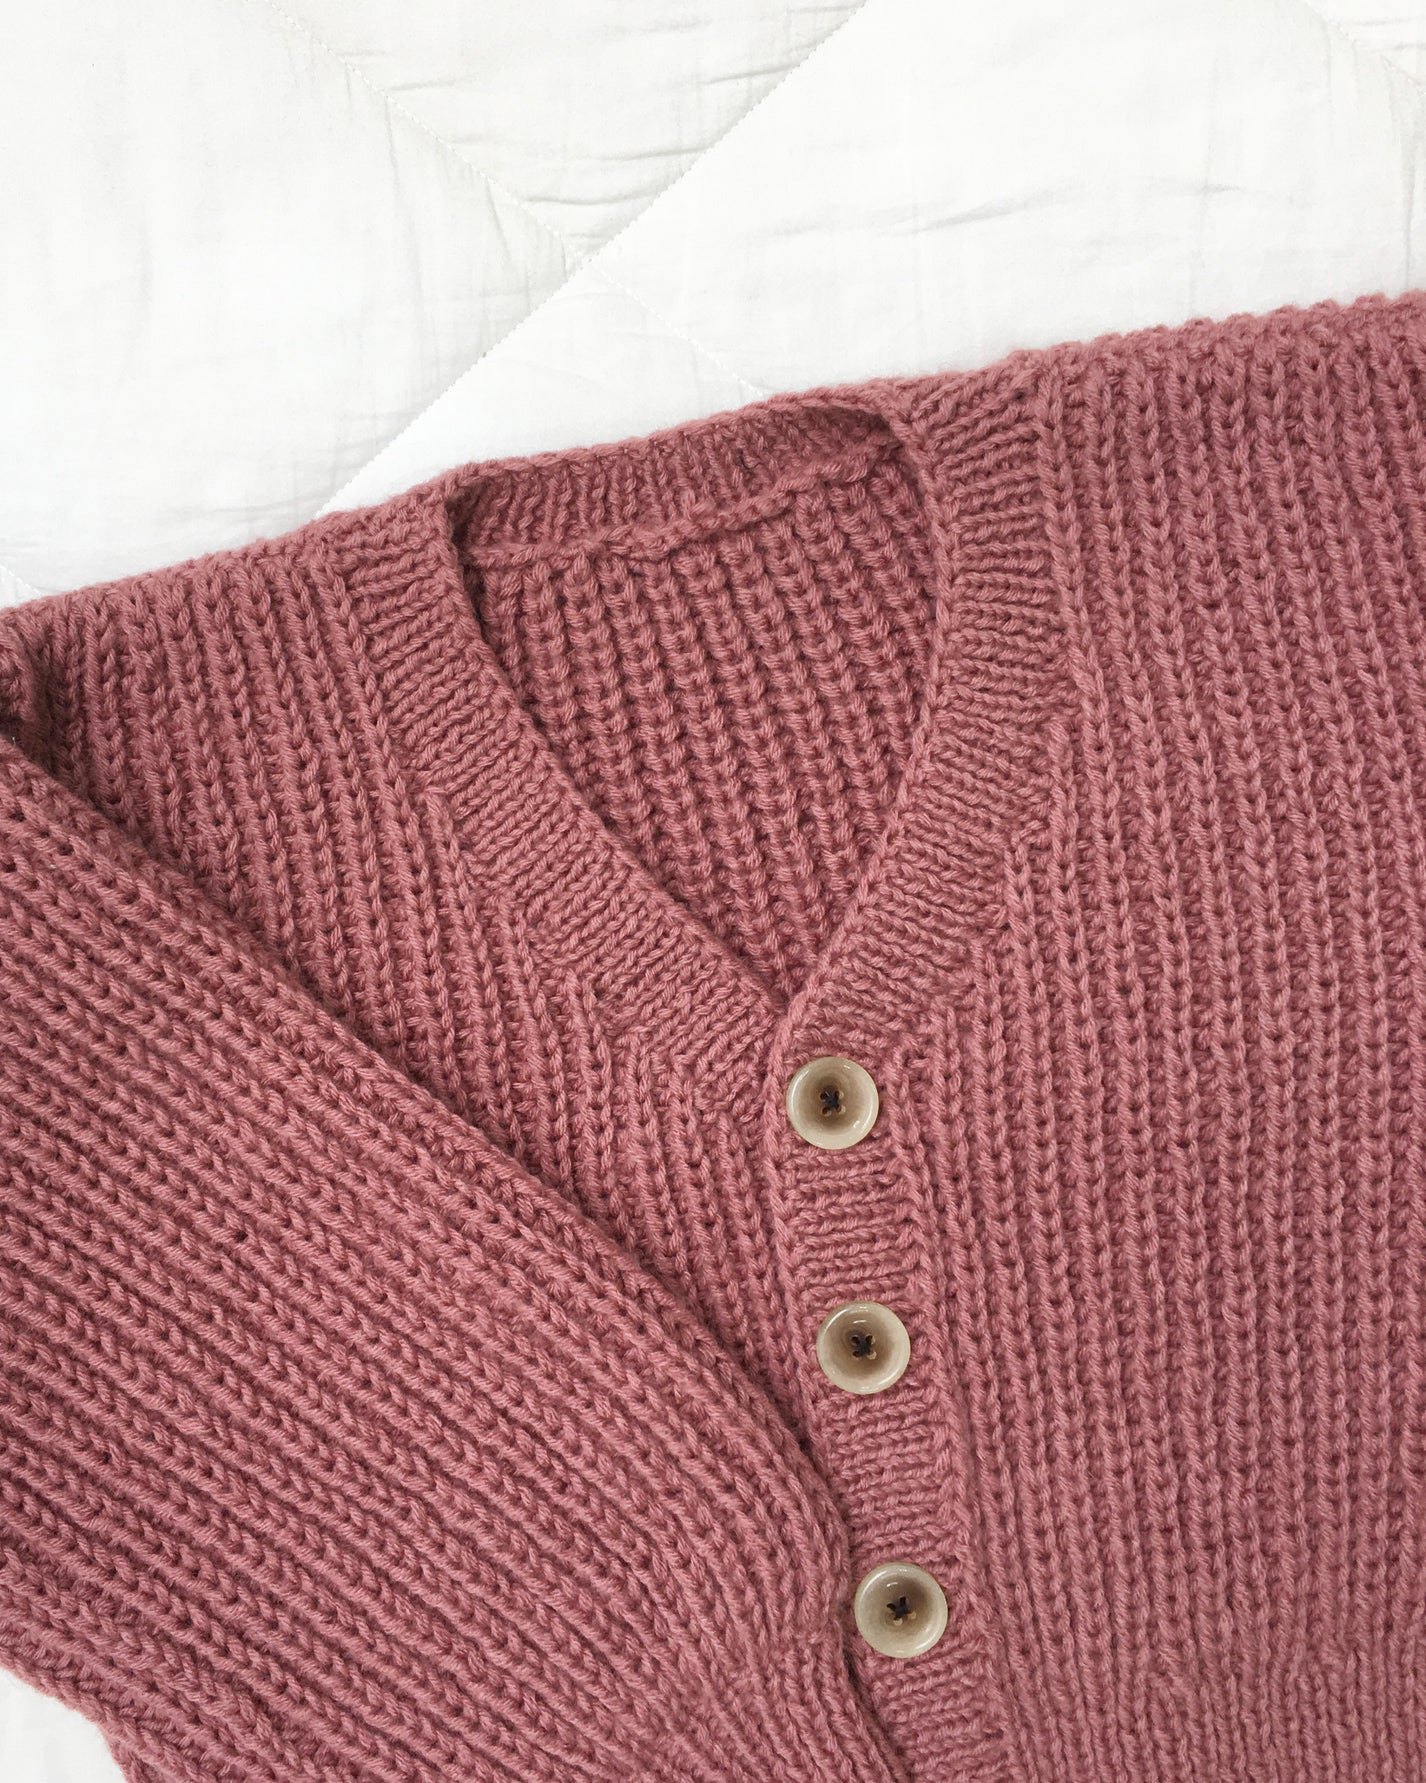 Cardigan No.17 | Knitting chunky sweater pattern – Daisy & Peace